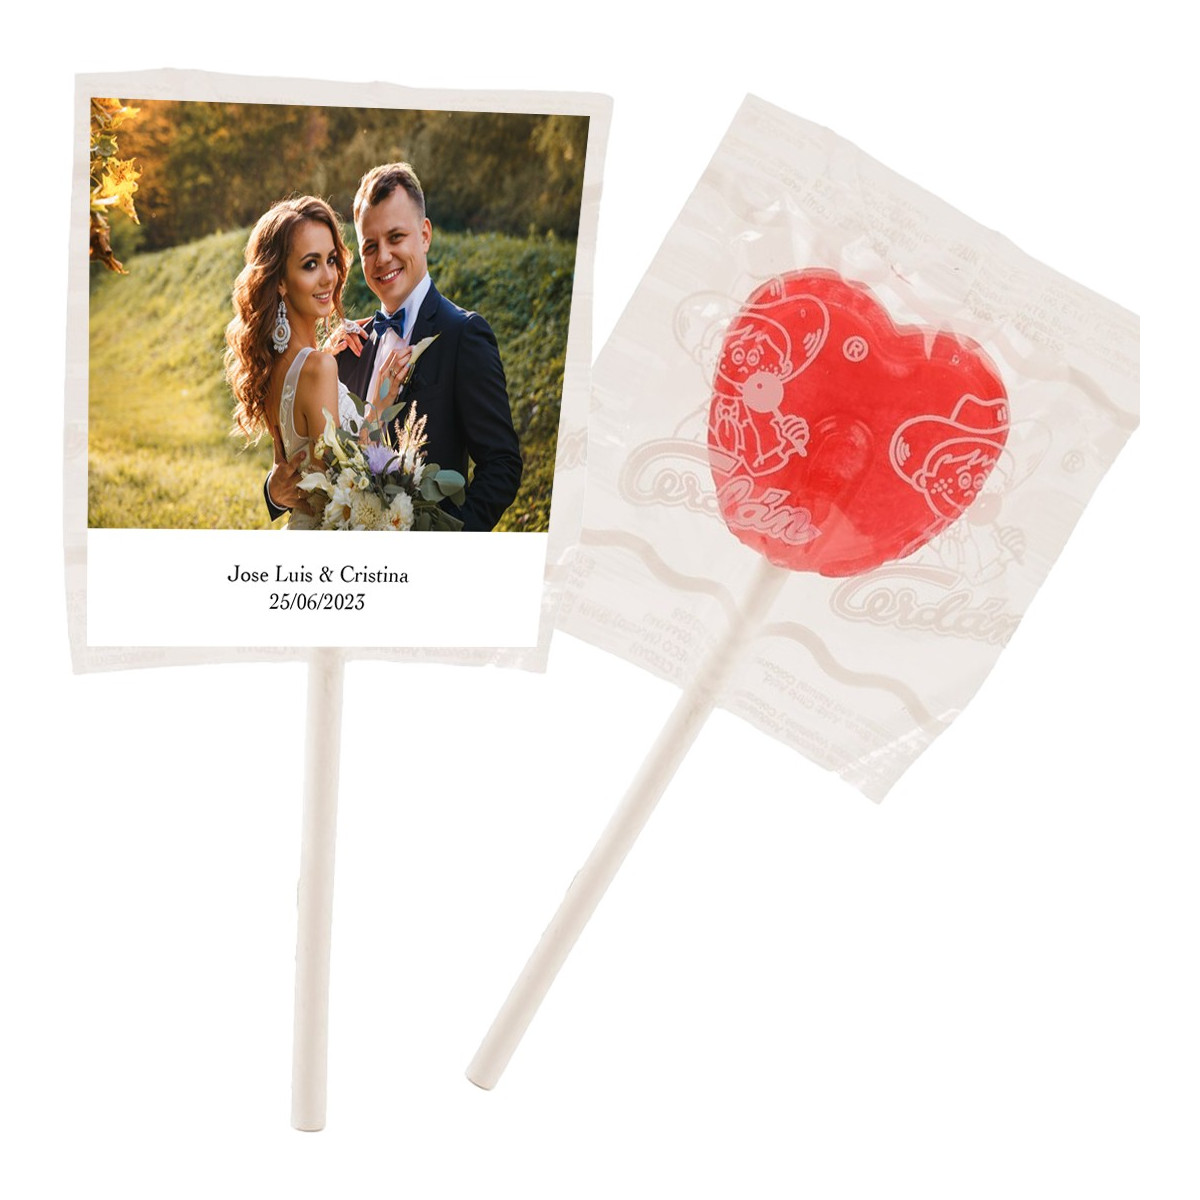 Pirulitos personalizados com foto e texto para casamentos batizados comunhões aniversários e empresas